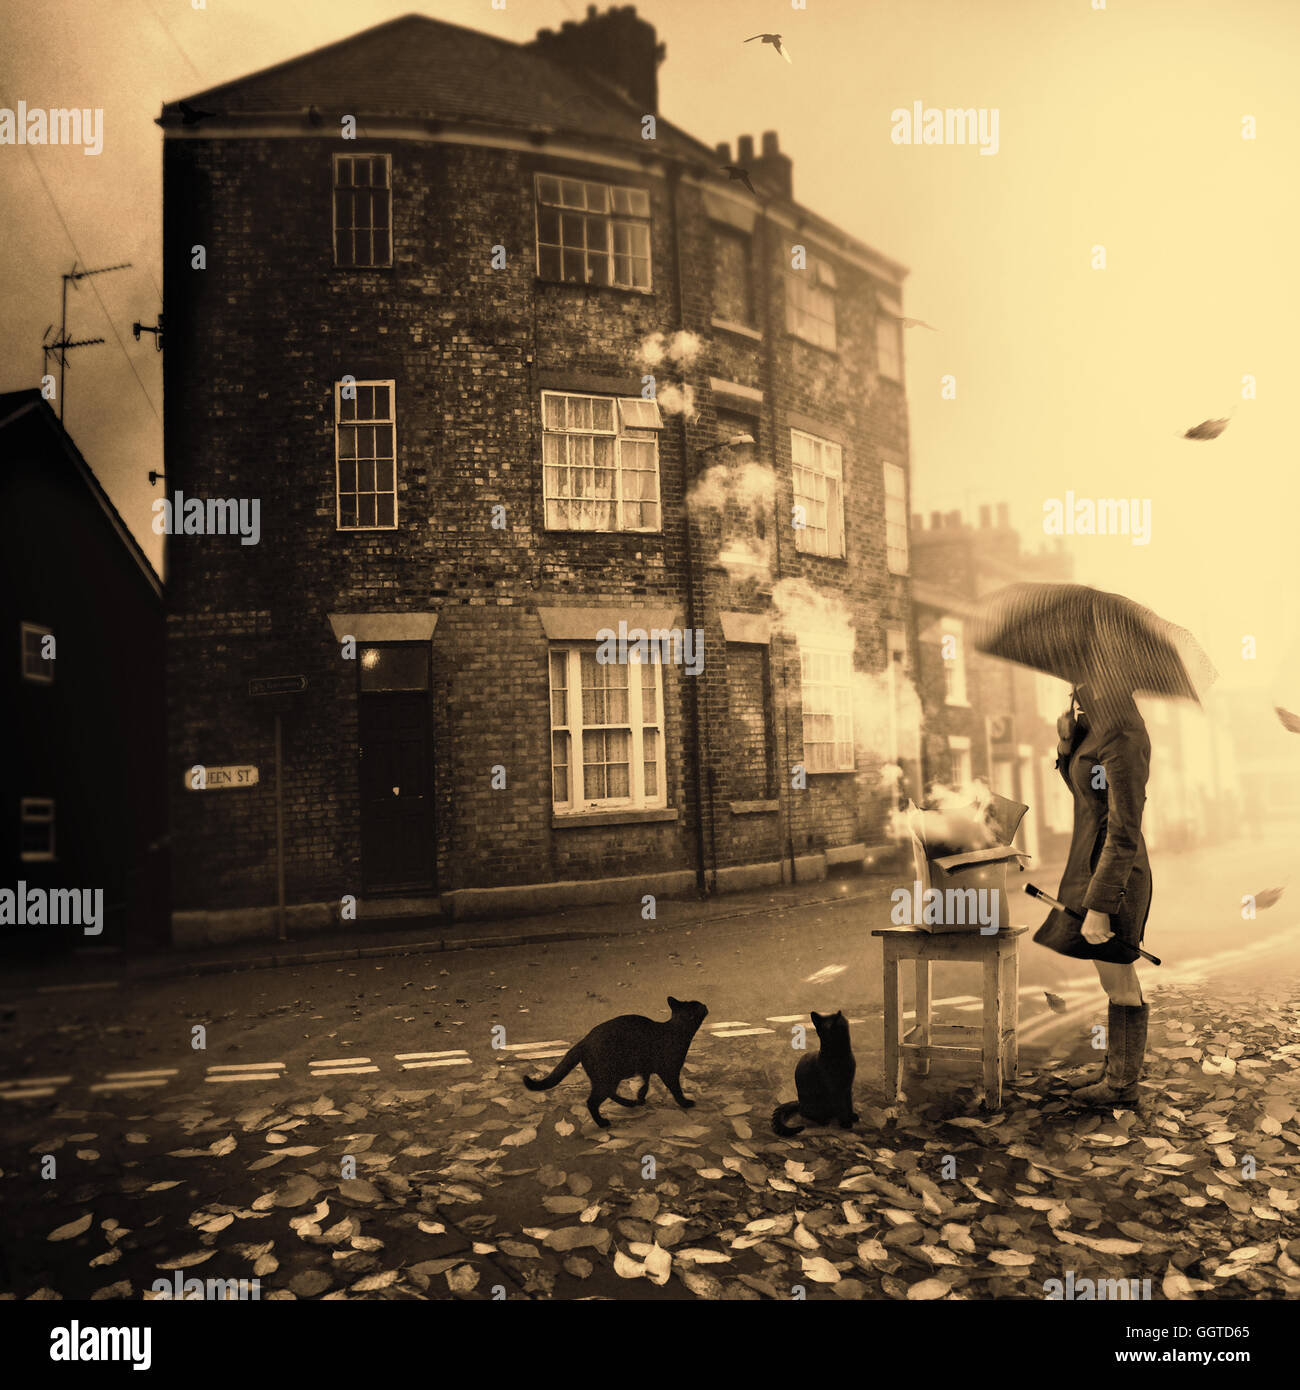 Image conceptuelle de personne sous égide debout dans un milieu de rue en ville, entouré de deux chats noirs Banque D'Images